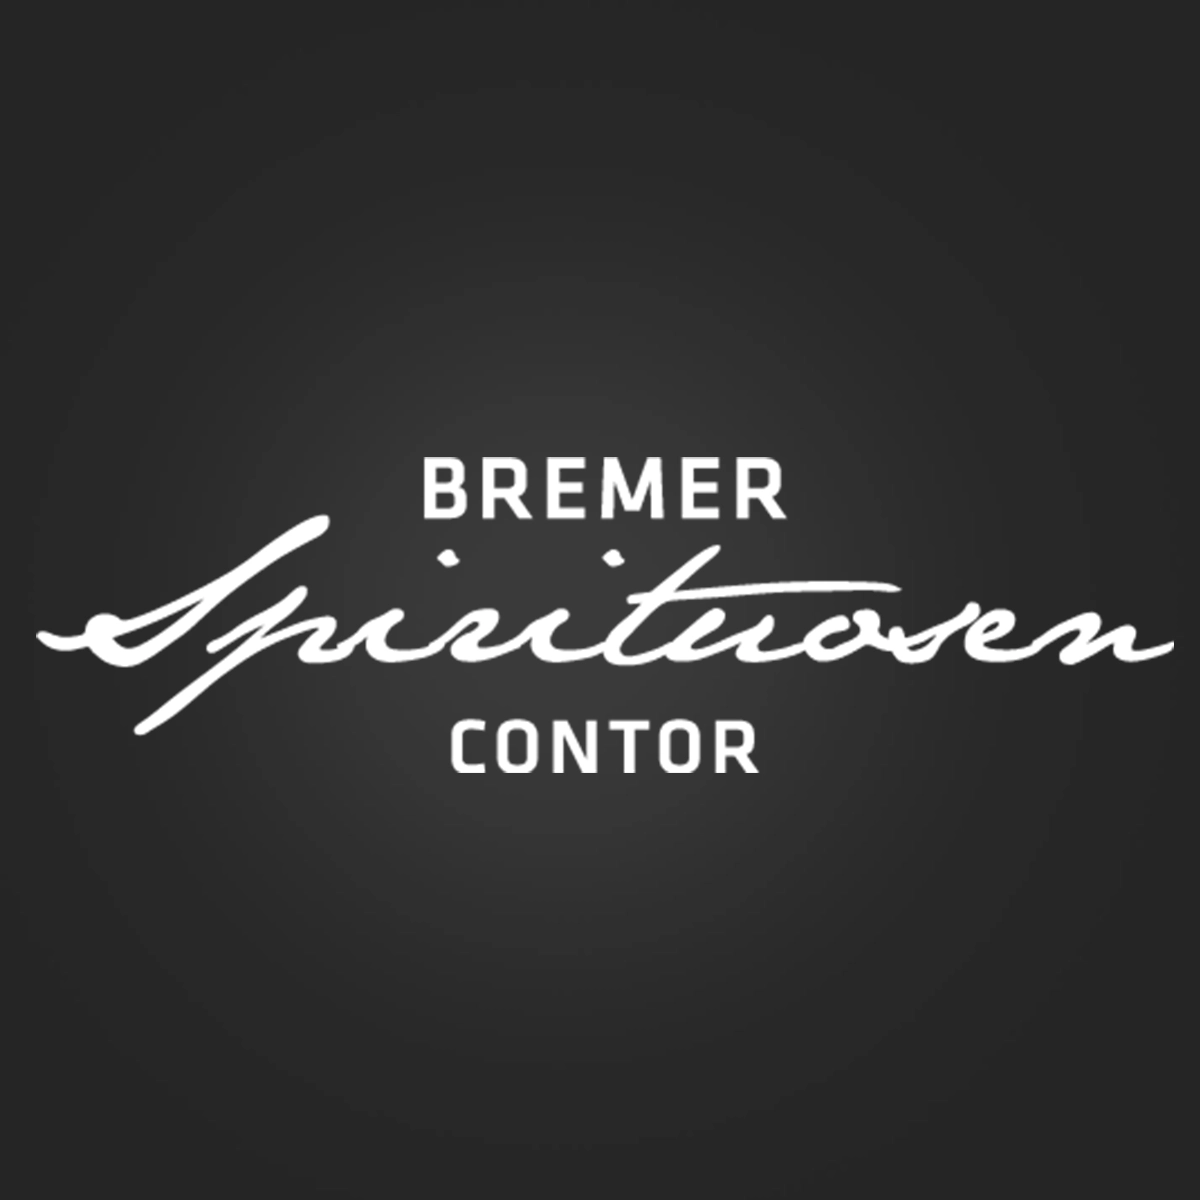 Bremer Spirituosen Contor GmbH